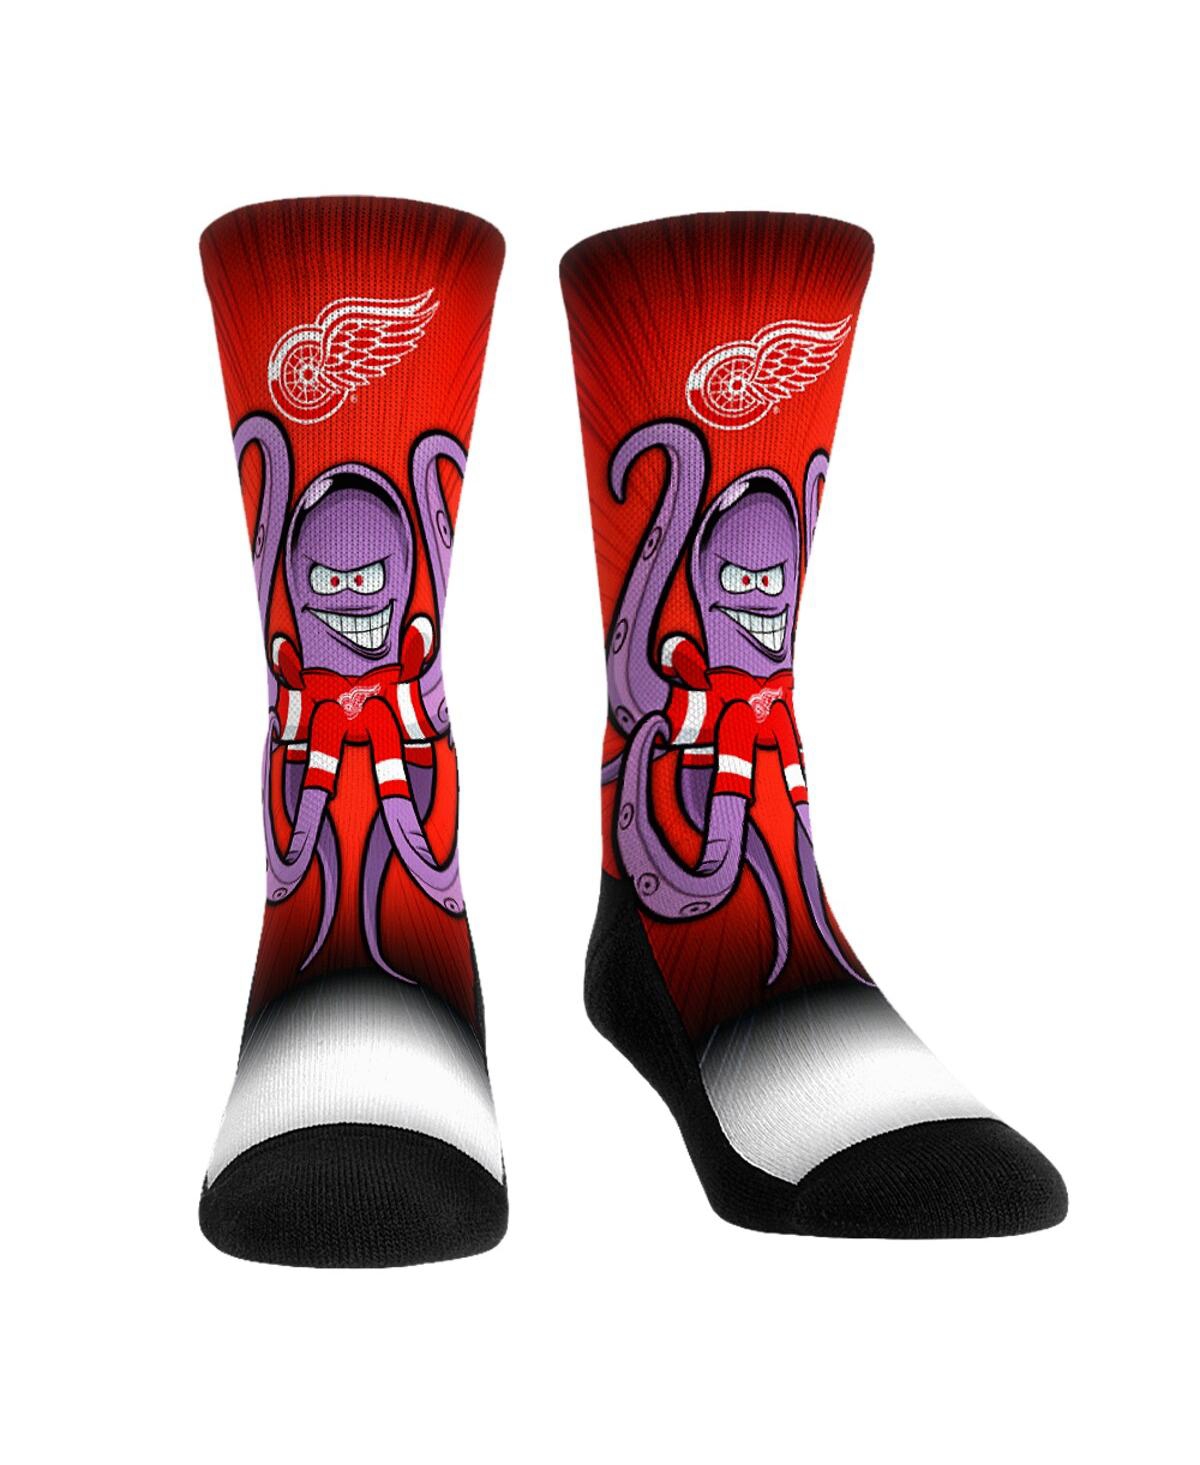 Men's and Women's Rock 'Em Socks Detroit Red Wings Mascot Pump Up Crew Socks - Multi